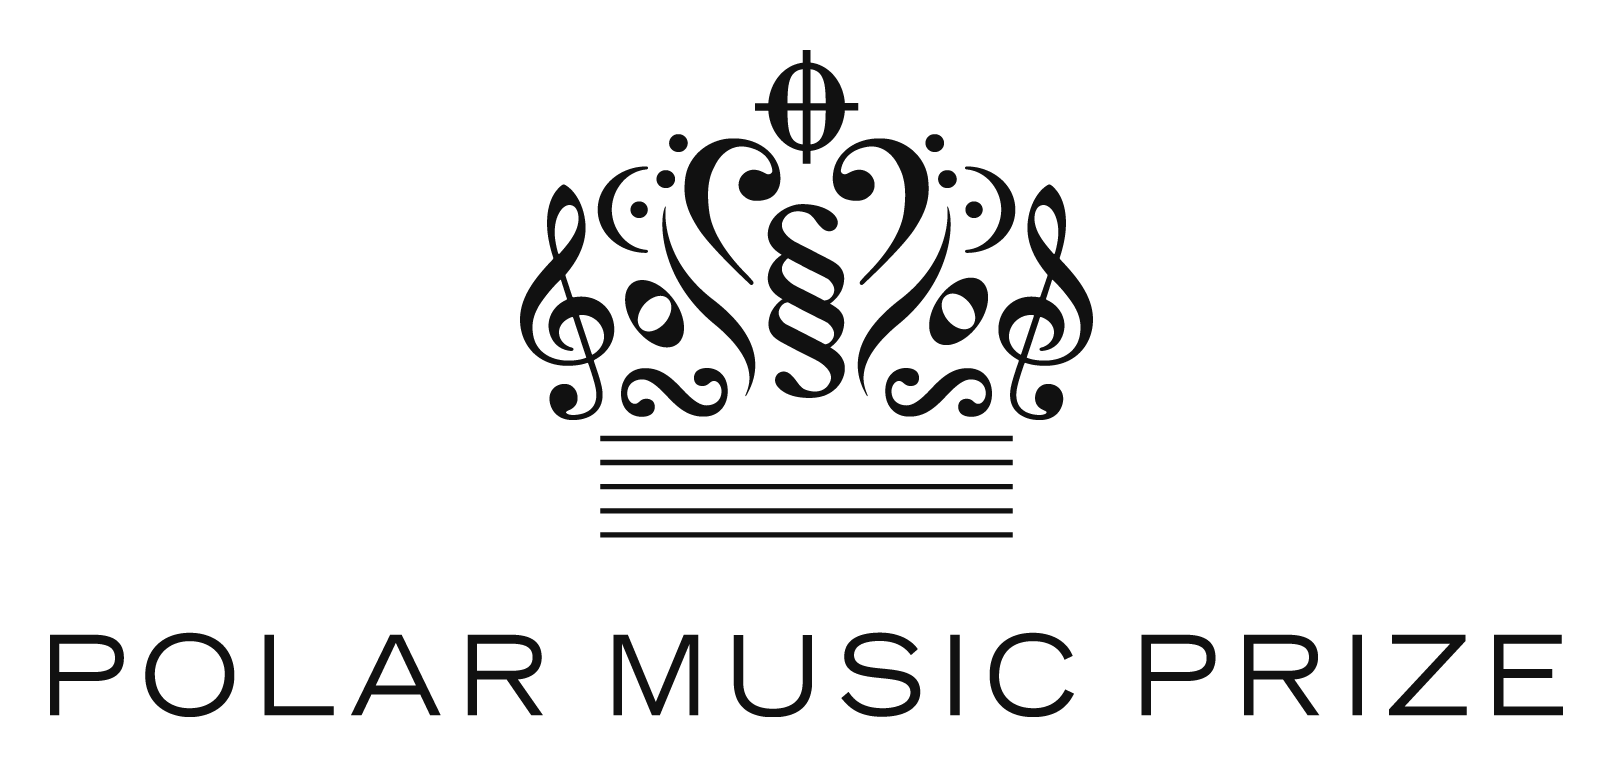 Polar music prize logo copy.png